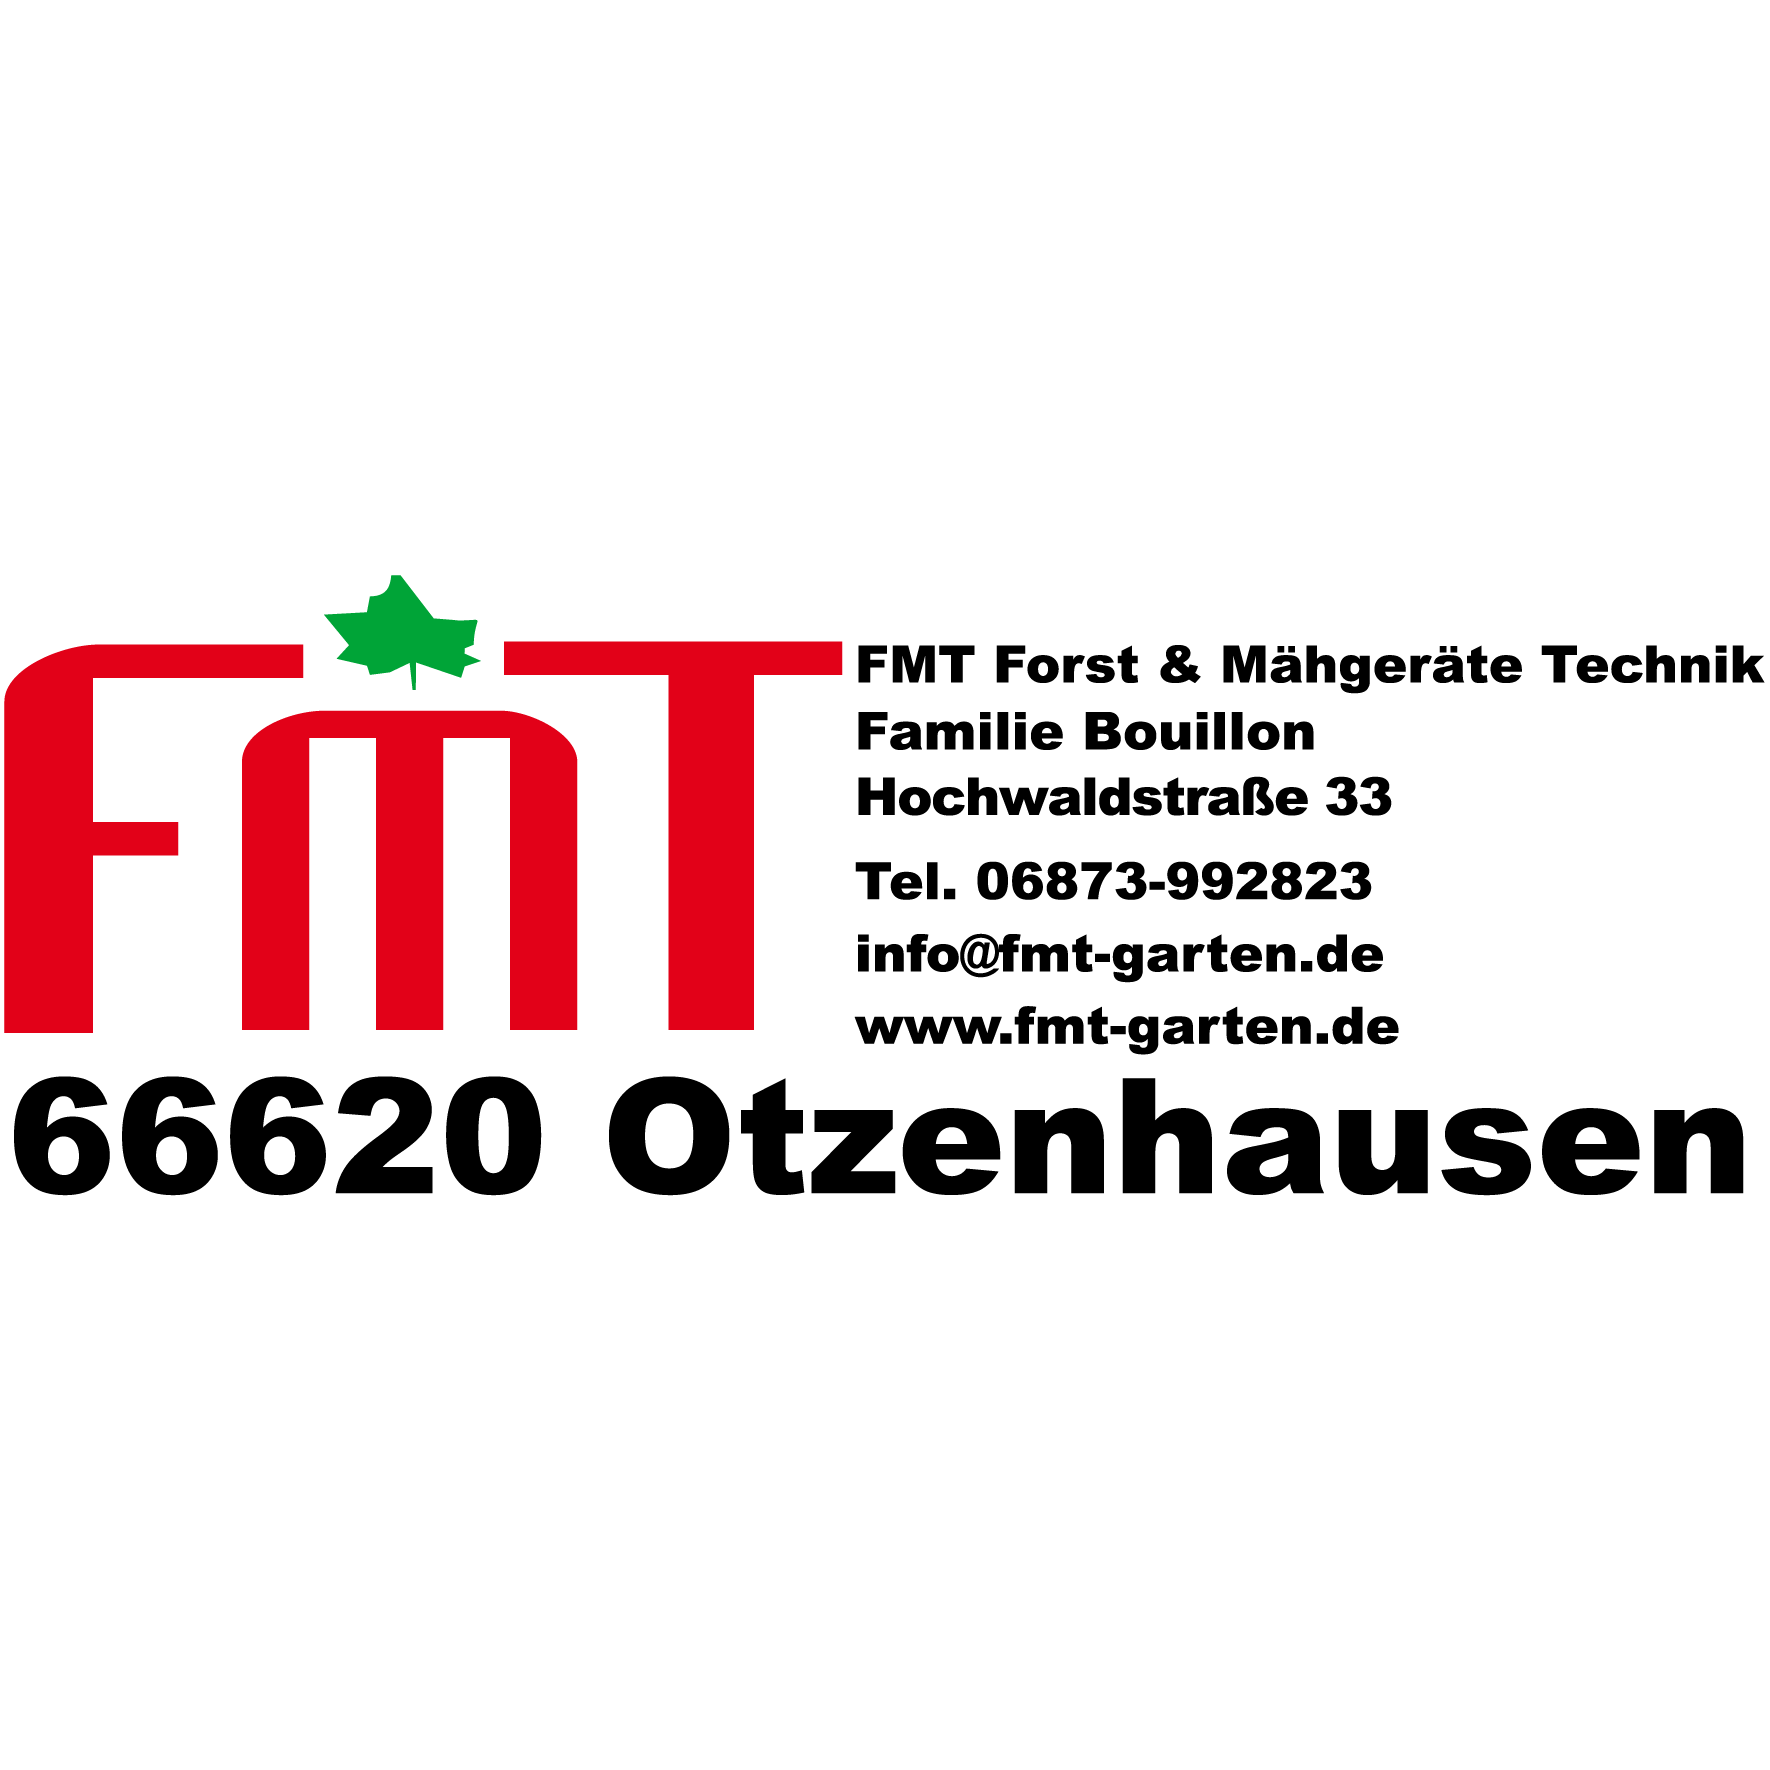 FMT Forst- & Mähgeräte Technik GmbH in Otzenhausen Gemeinde Nonnweiler - Logo